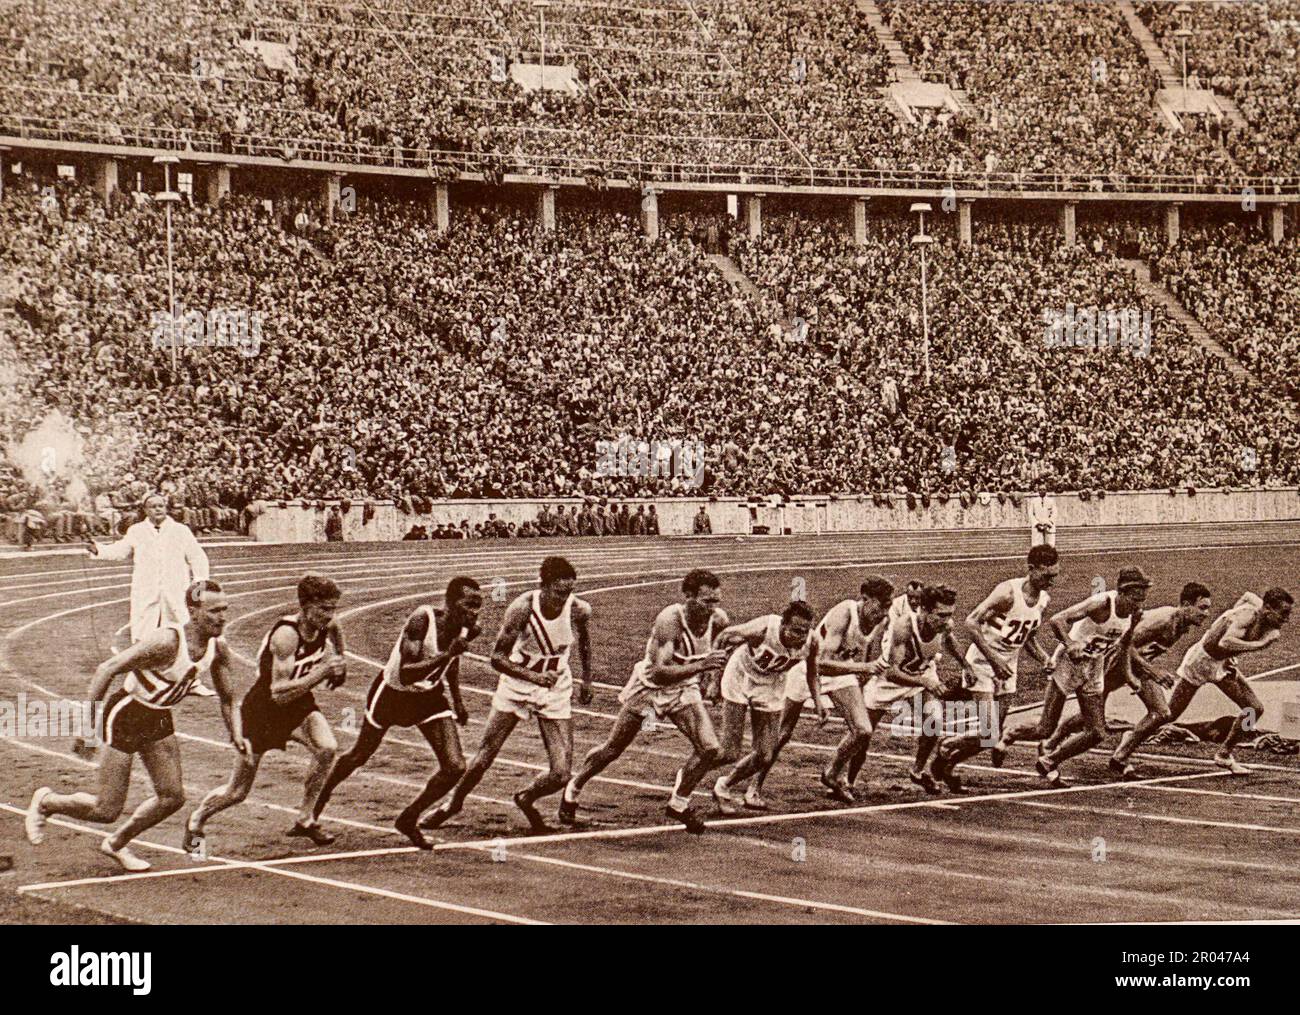 1936 Olimpiadi, Berlino, Germania.i 12 finalisti nei 1500 metri 1936 Olimpiadi Giochi. La gara è stata vinta da John Lovelock della Nuova Zelanda. Nessuno dei due partecipanti tedeschi è stato messo. Foto Stock